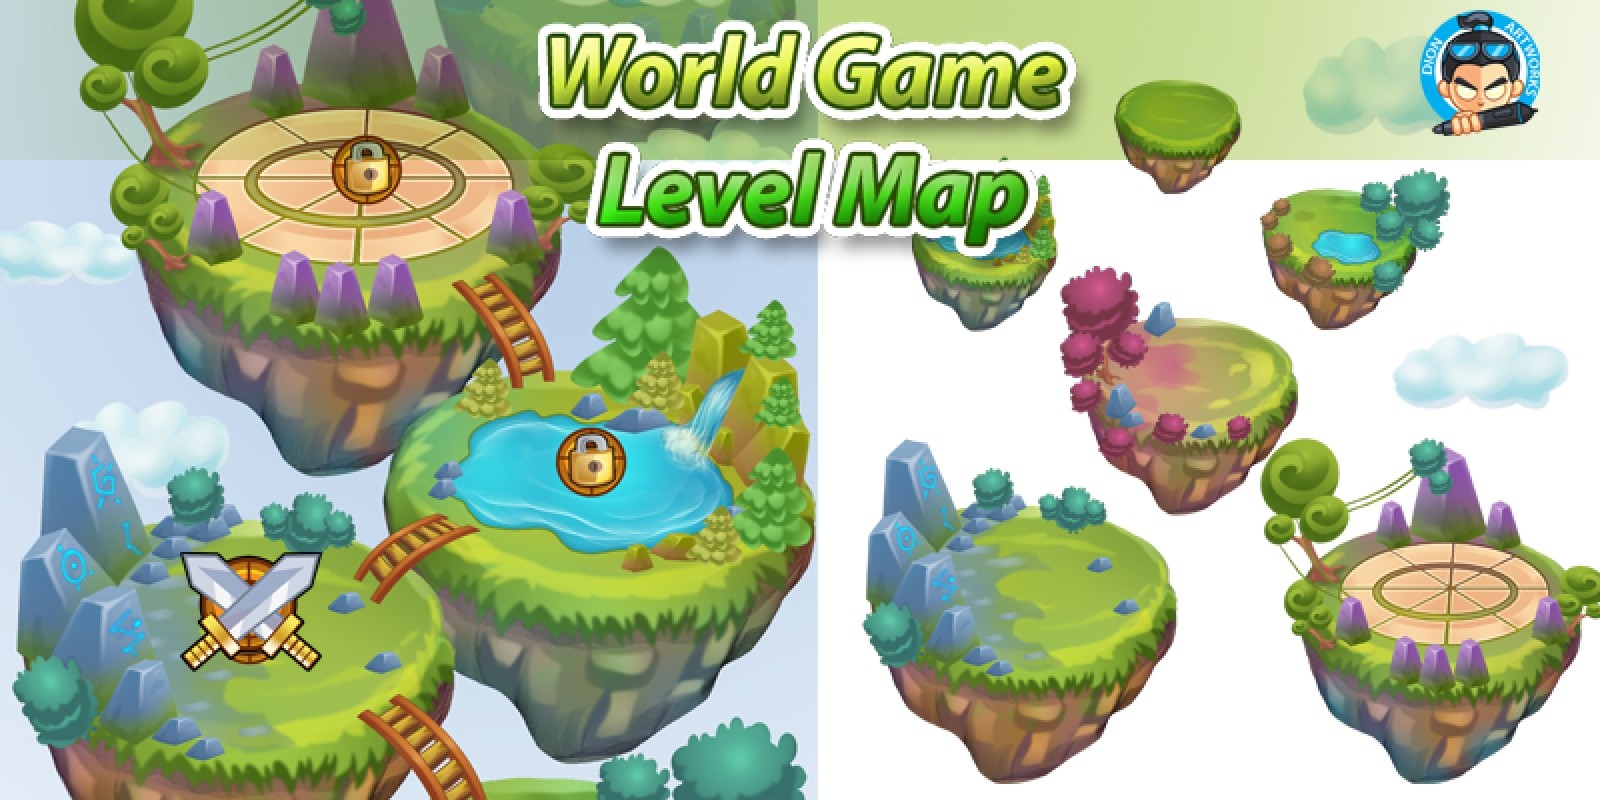 Game Level Map. Левел в игре. Зеленый мир игра. Уровни в игре.